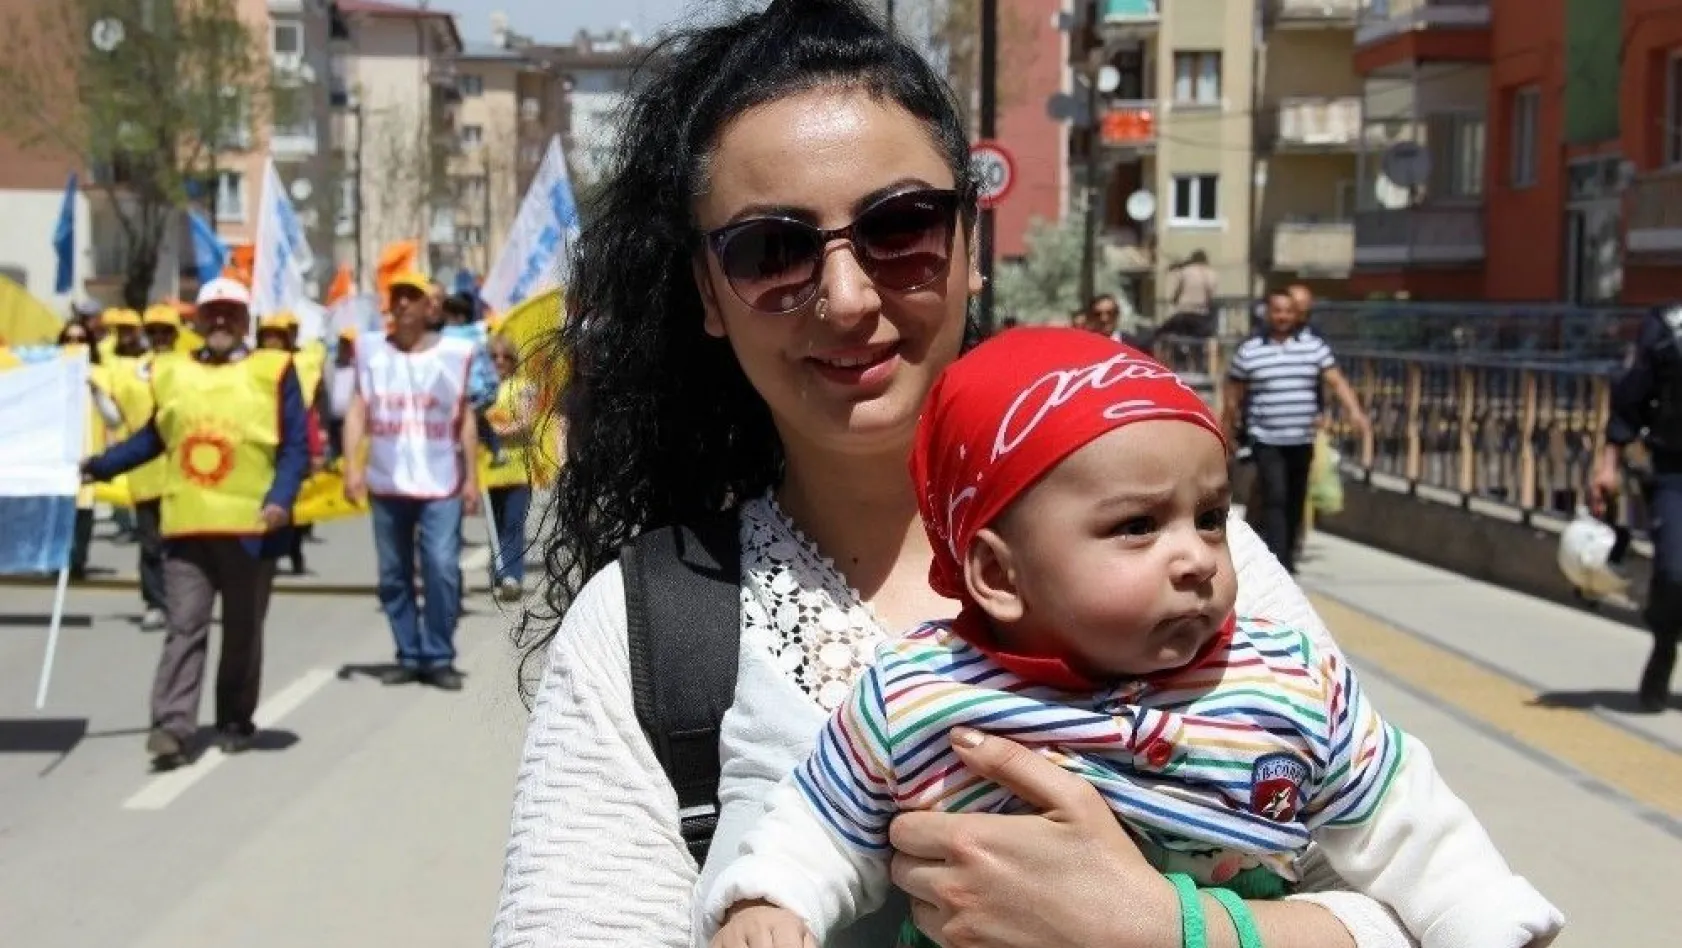 Sivas'ta 1 Mayıs kutlamalarına katılım düşük oldu
